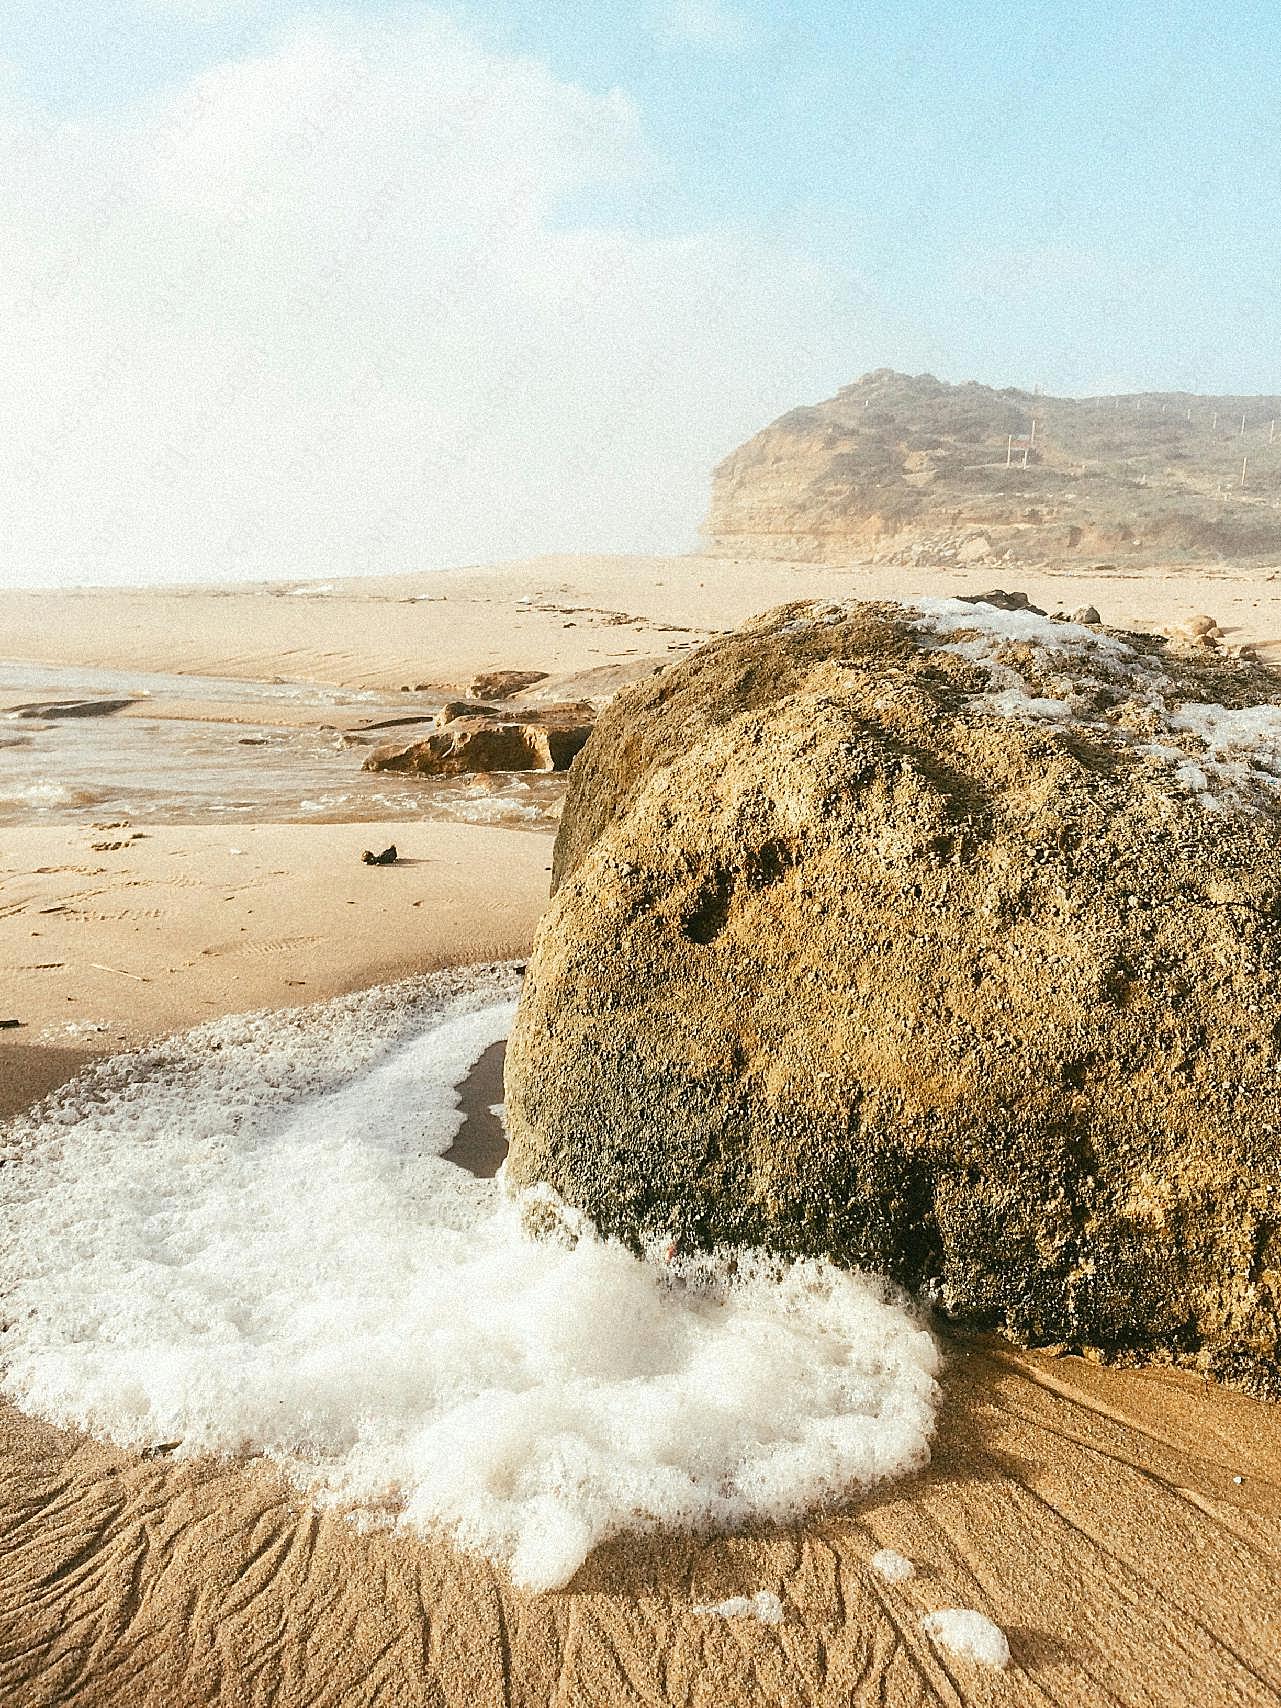 沙滩风化的石头图片高清摄影